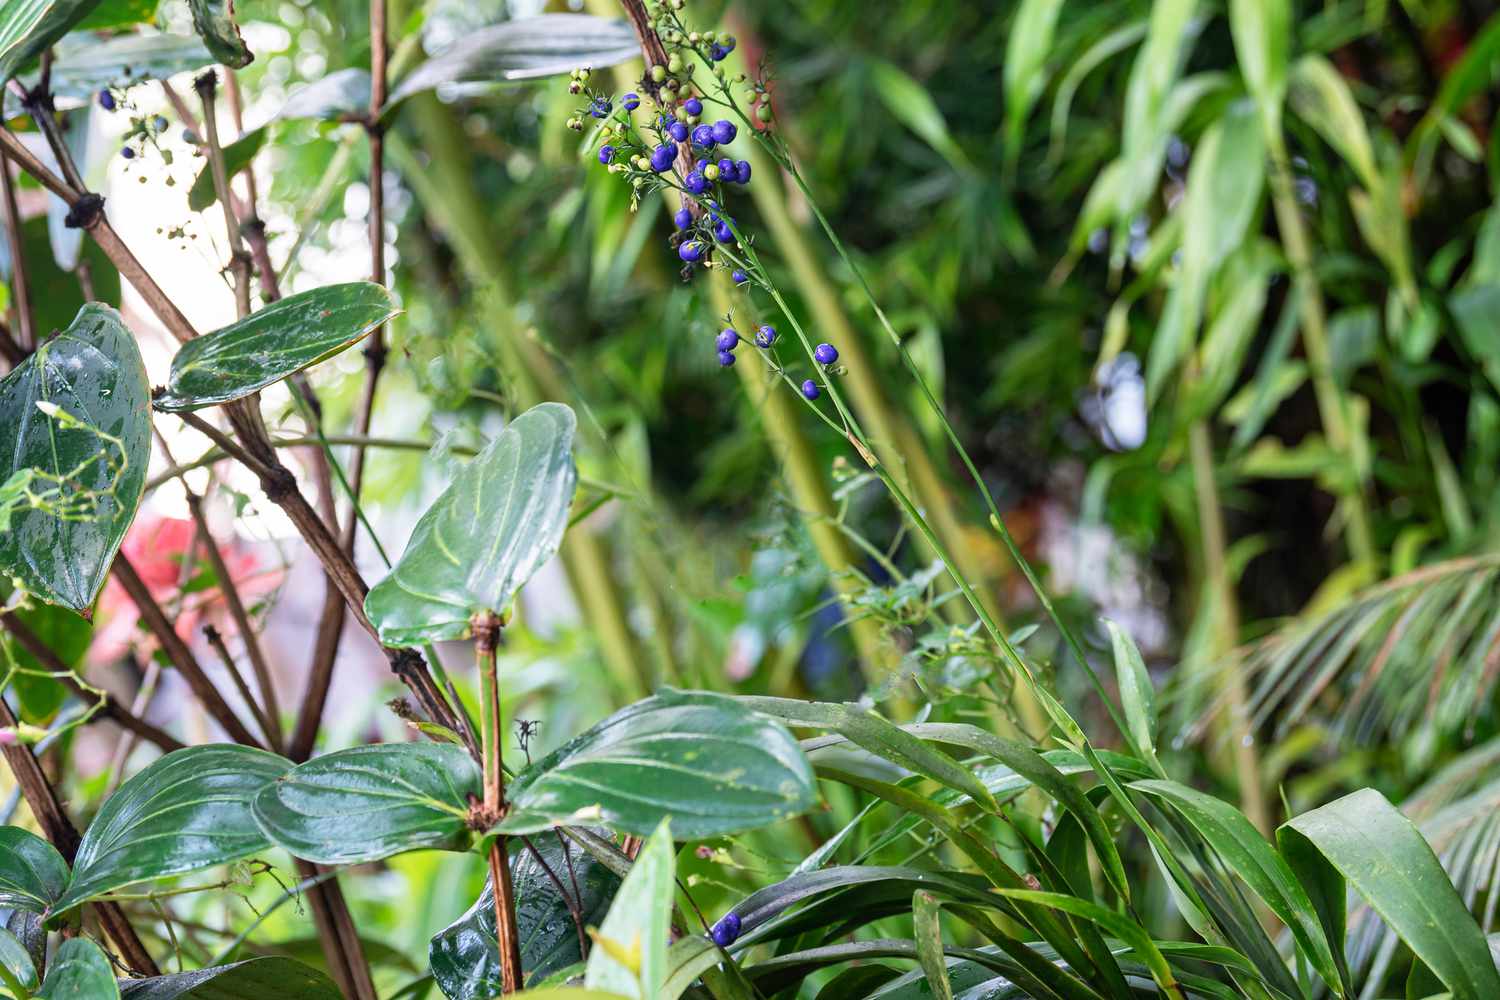 Flachslilienpflanze auf dünnem Stängel mit violetten Rispenknospen, umgeben von Laub